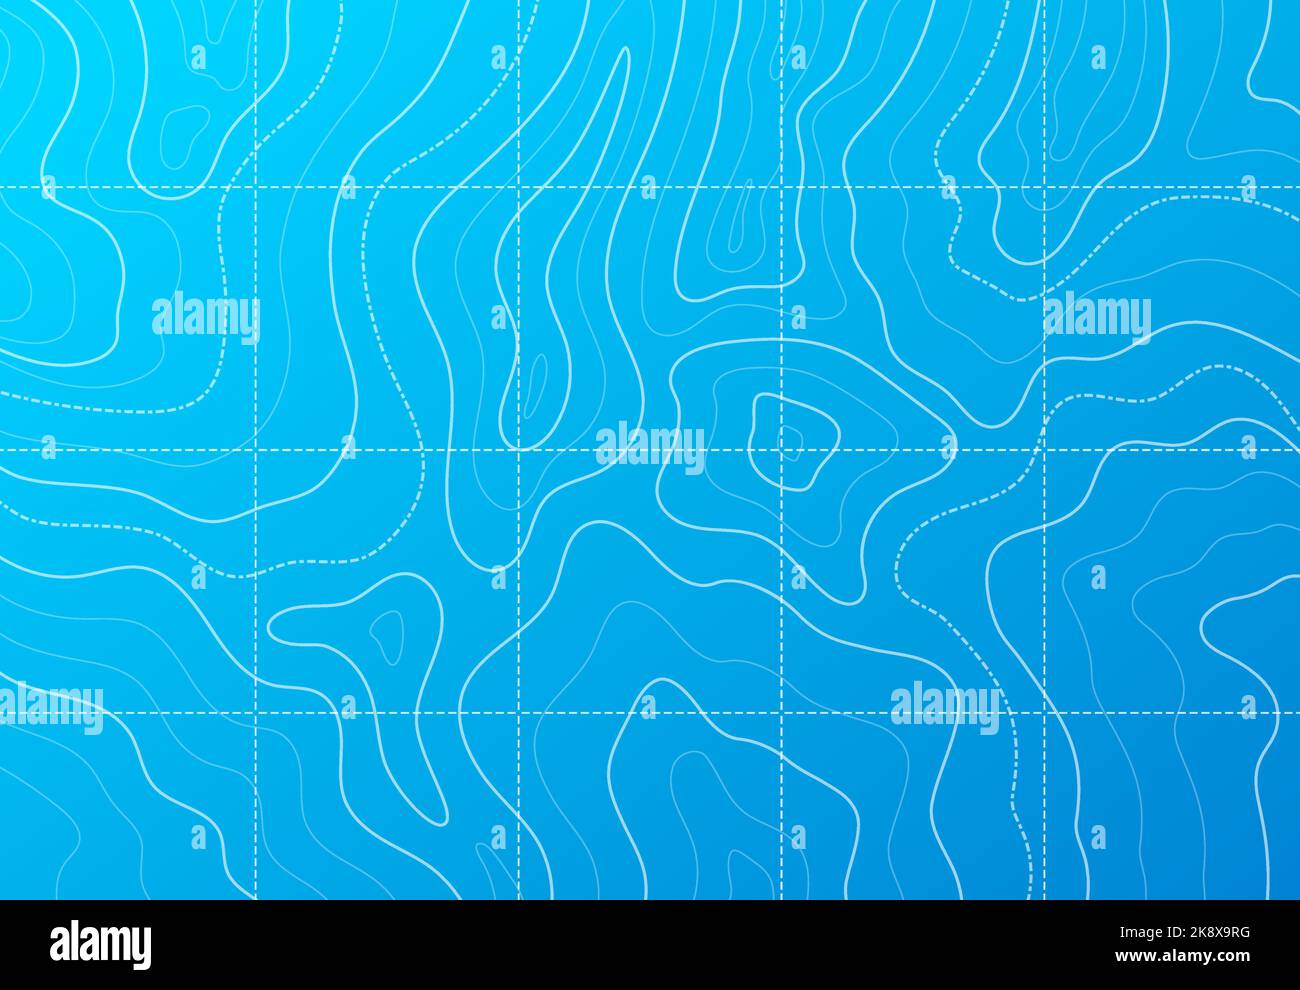 Carte topographique de contour de mer ou d'océan avec motif vectoriel de paysage géographique marin abstrait sur fond bleu. Relief du fond de la mer et du fond de l'océan, profondeur de l'eau et carte des cours d'eau sous-marins Illustration de Vecteur